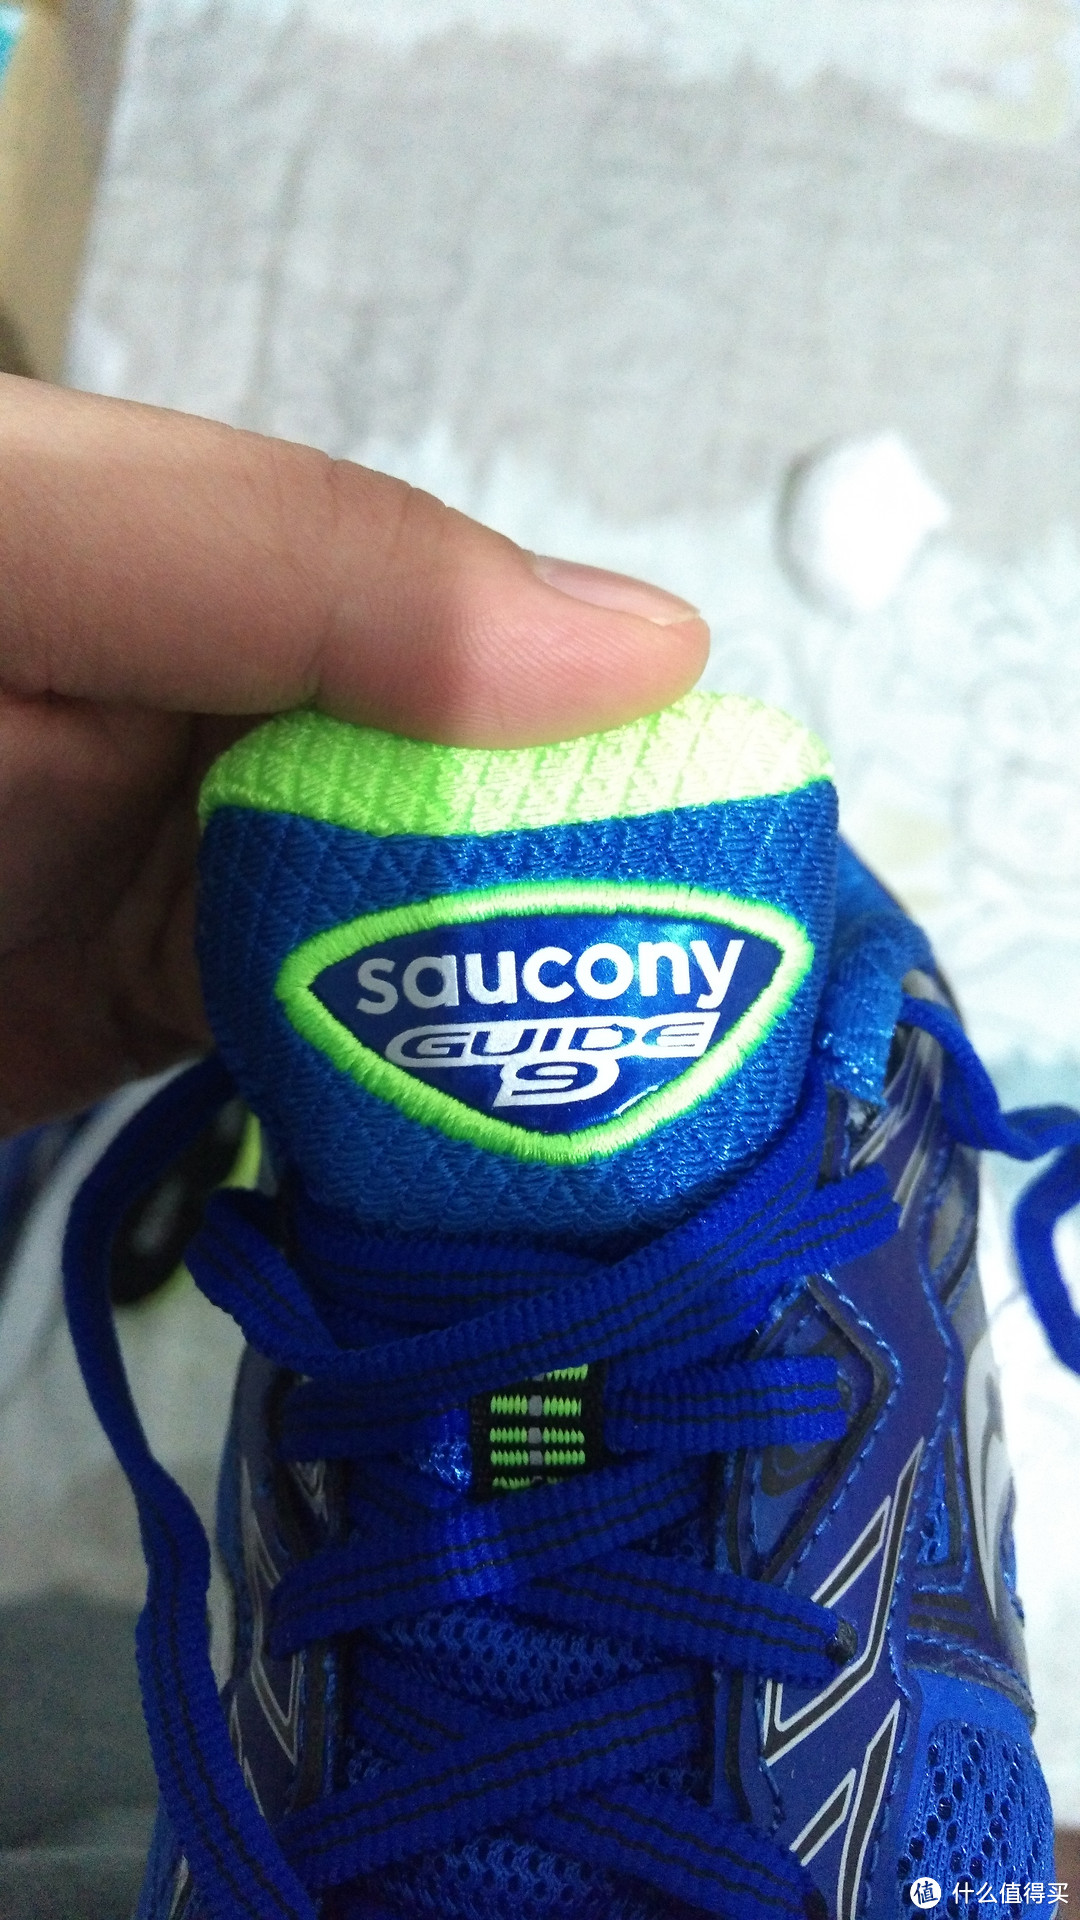 #原创新人#我的第一双跑鞋——Saucony Guide9 跑鞋的由来及测评